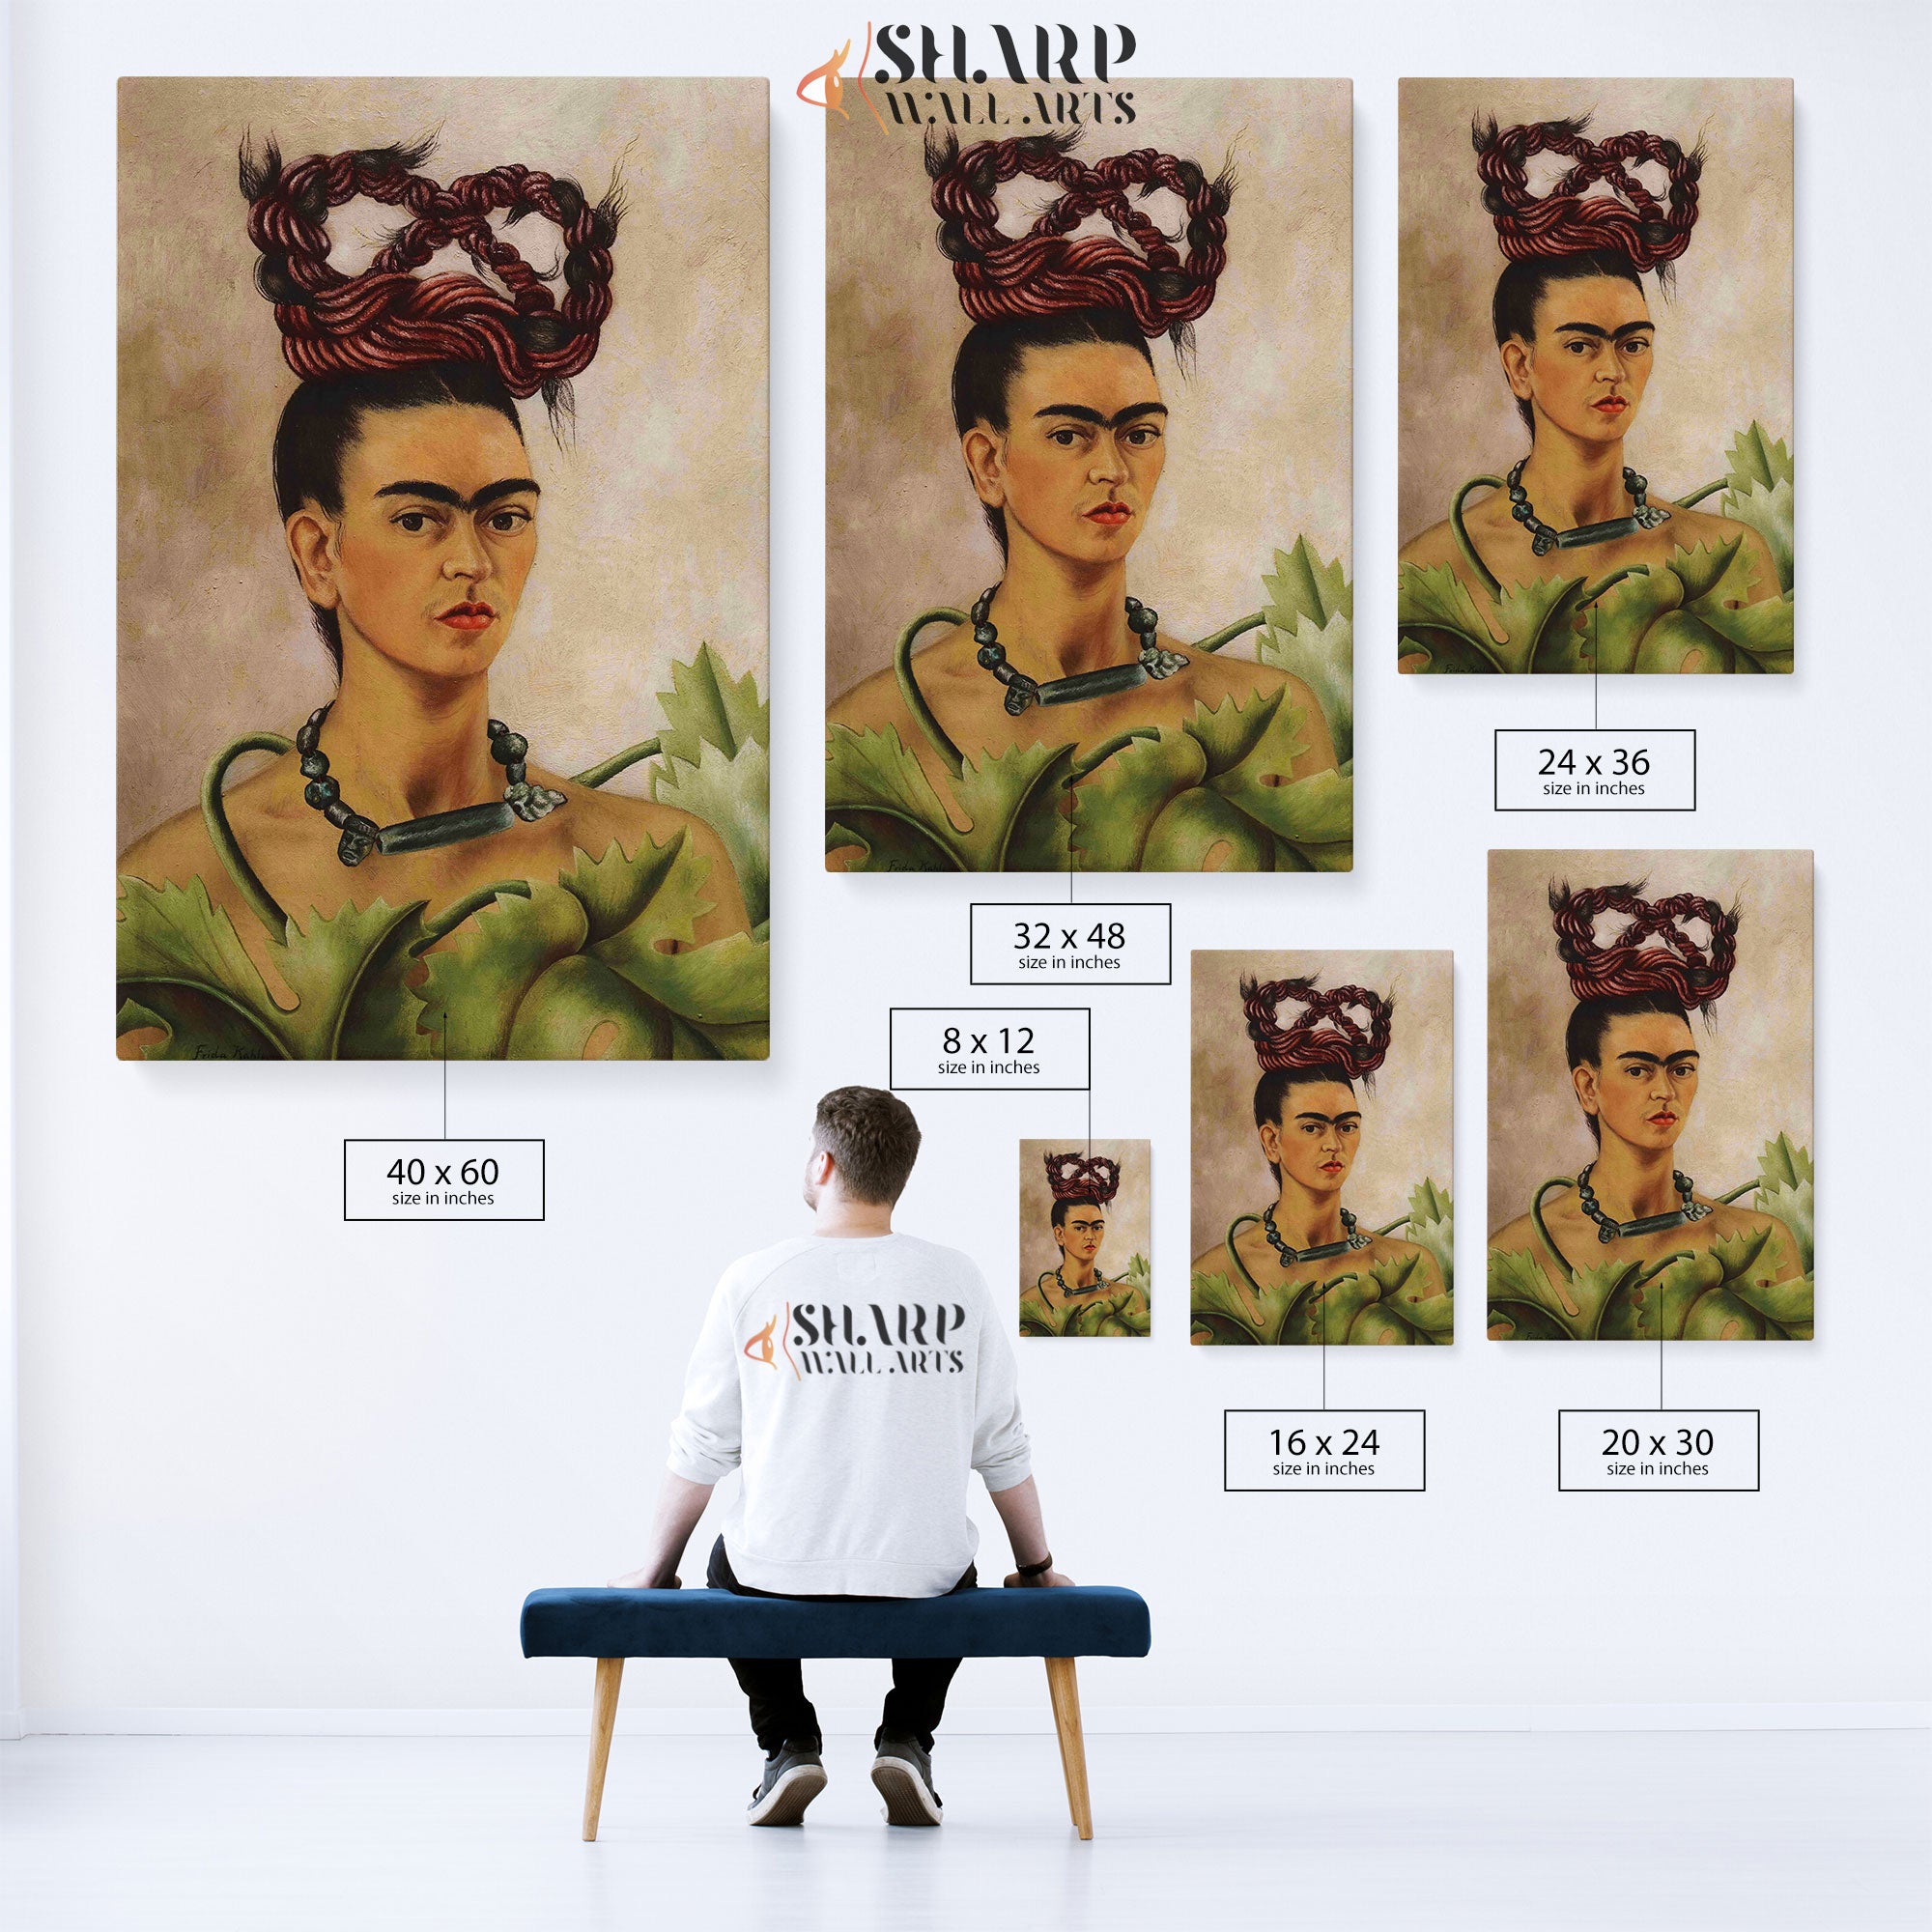 Frida Kahlo Self Portrait With A Scythe Canvas Wall Art